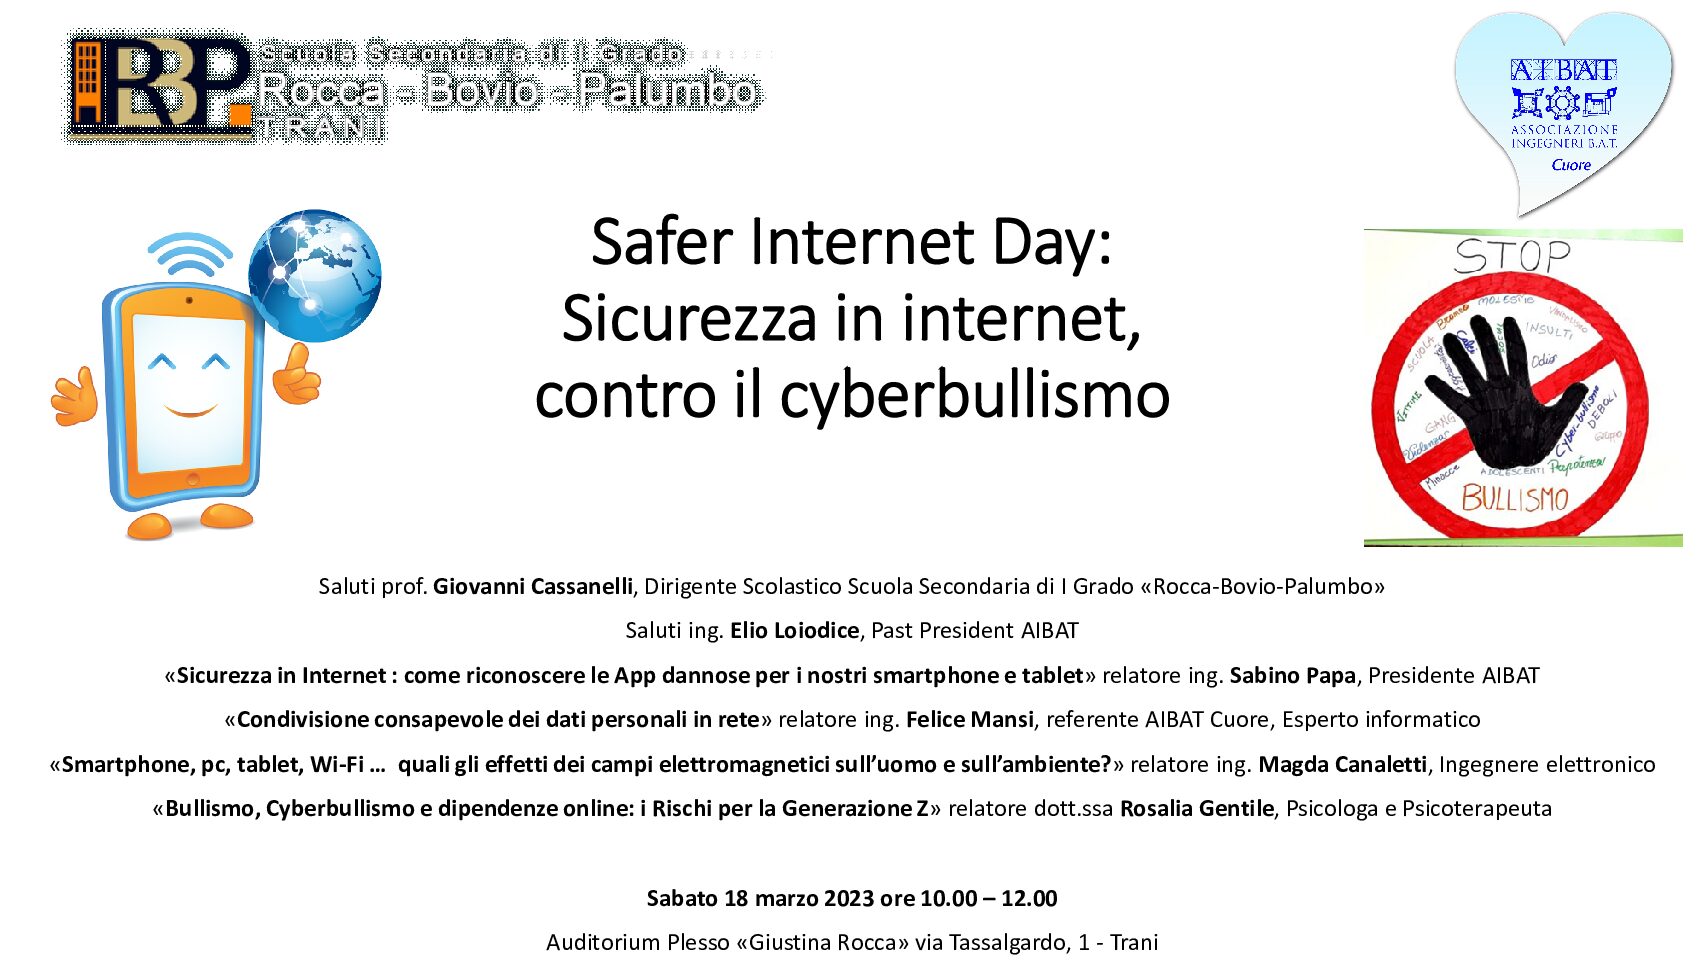 Incontro con AIBAT dal titolo “Safer Internet Day: Sicurezza in internet, contro il cyberbullismo” – sabato 18 marzo